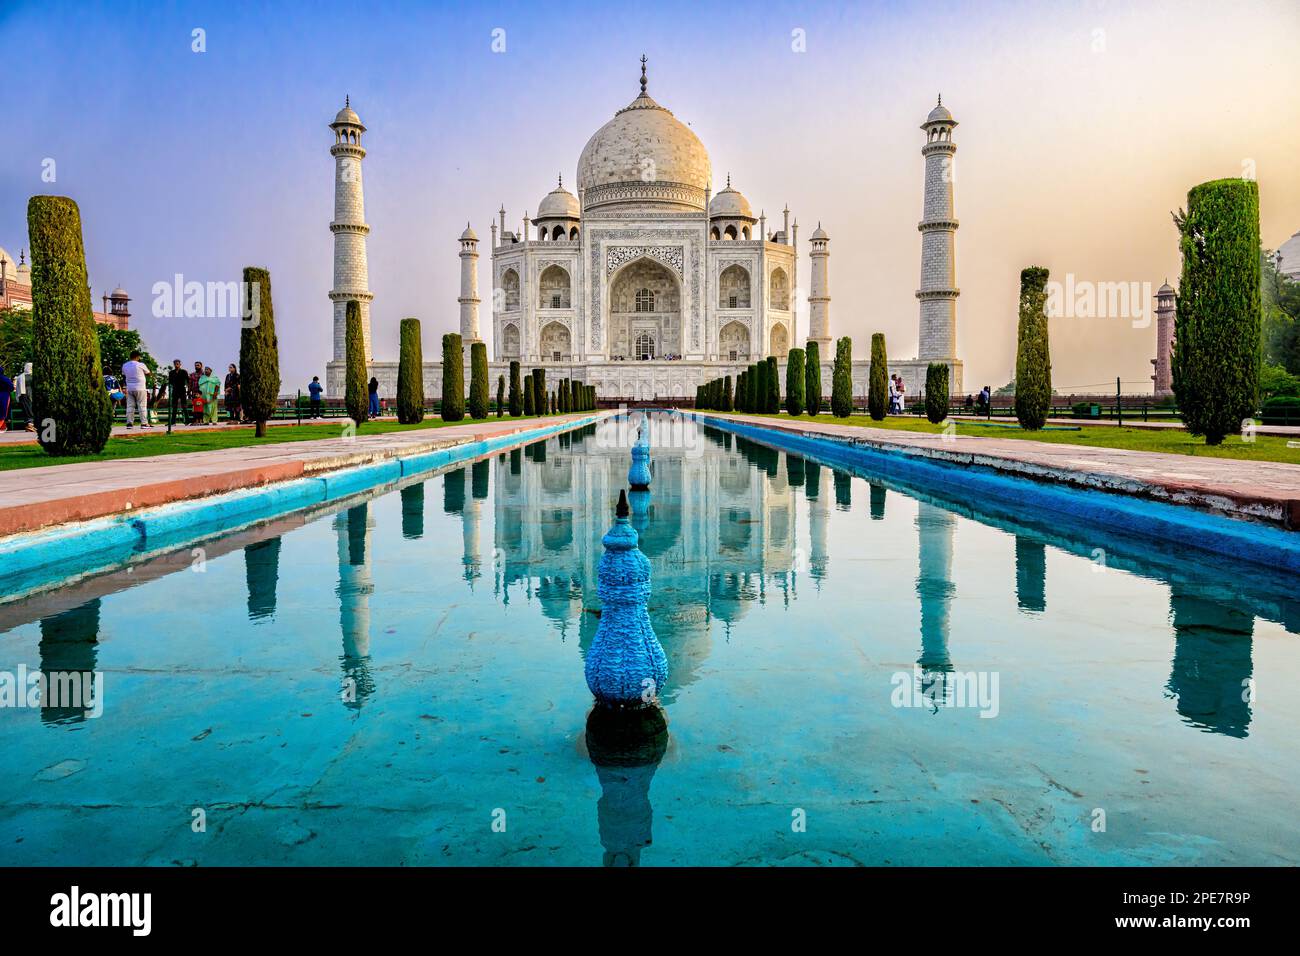 Relezione simmetrica del Taj Mahal nella piscina riflettente situata nei giardini circostanti perfettamente ordinati, che sono tipici dell'arte di Mughal Foto Stock